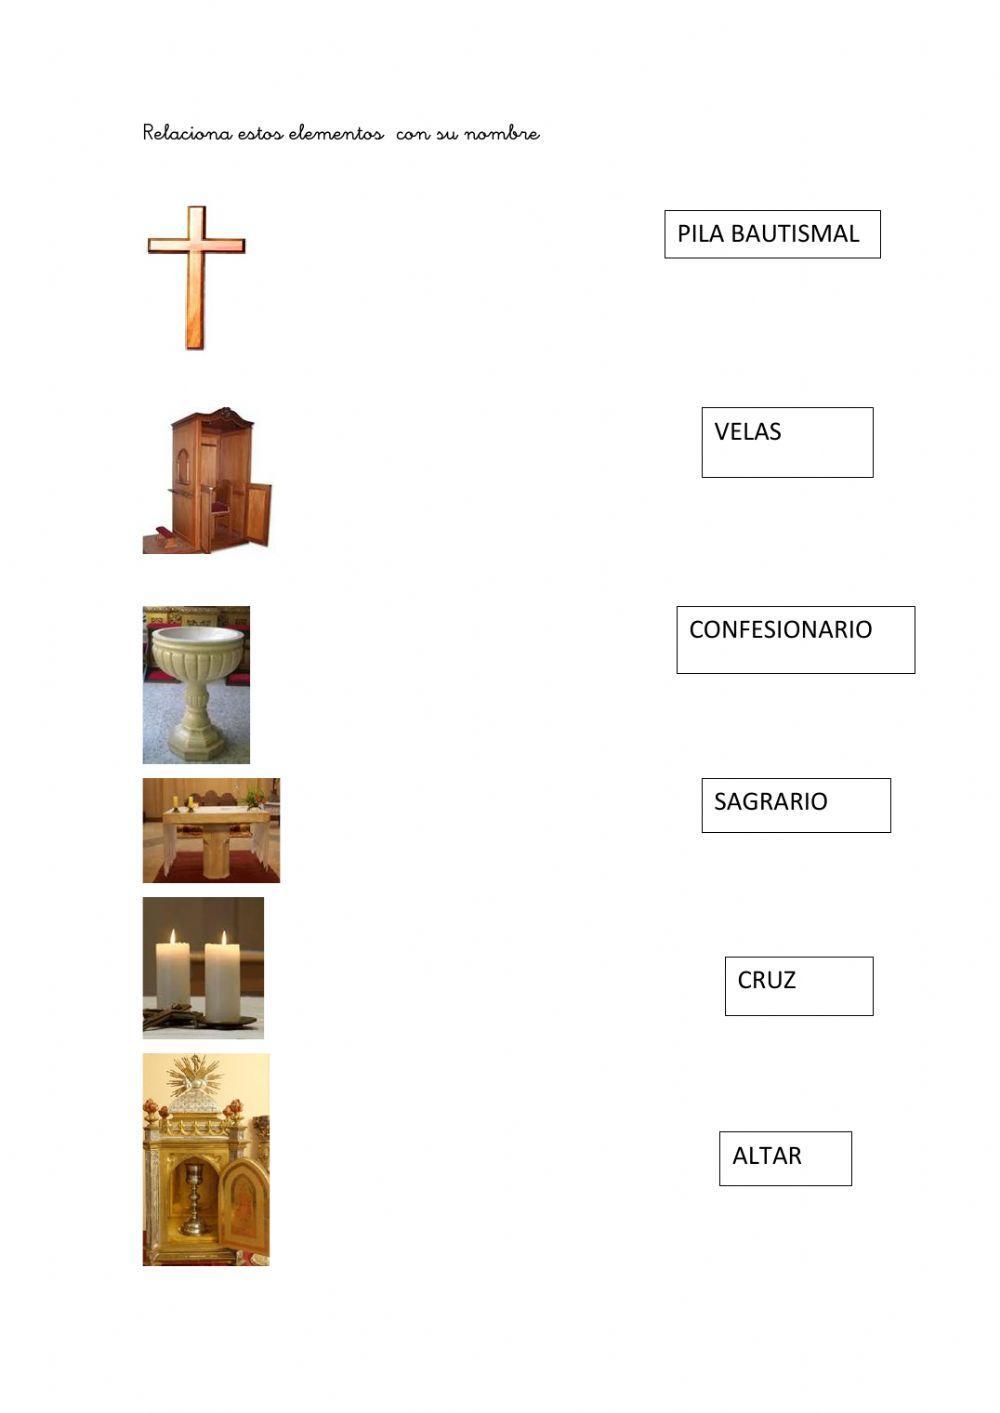 Elementos iglesia